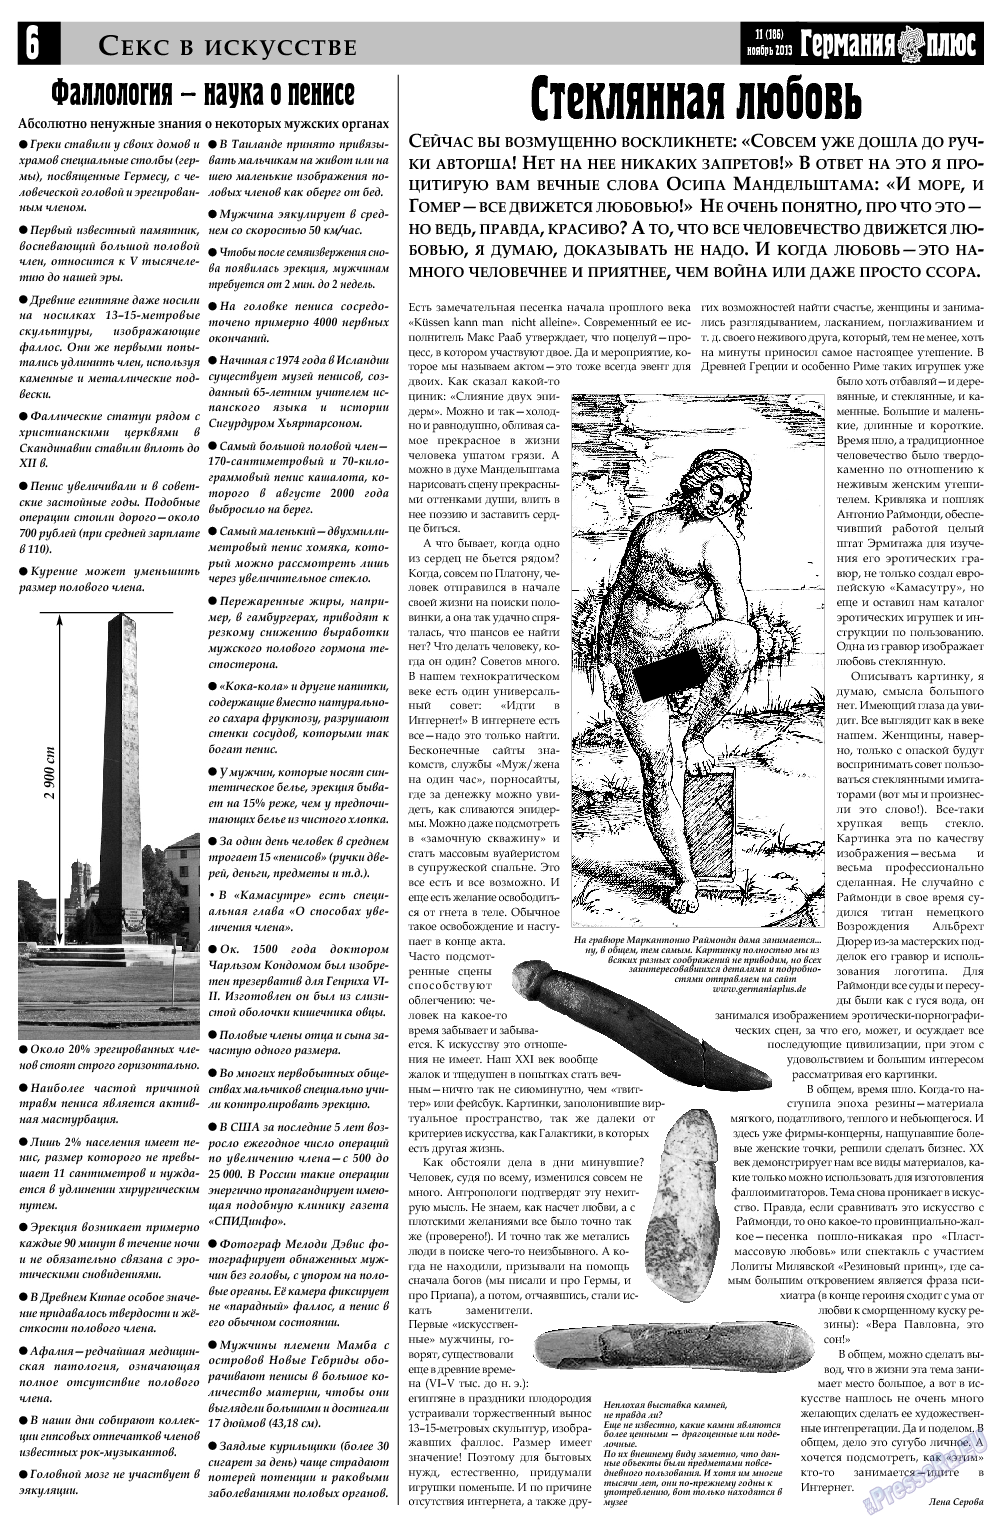 Германия плюс (газета). 2013 год, номер 11, стр. 6